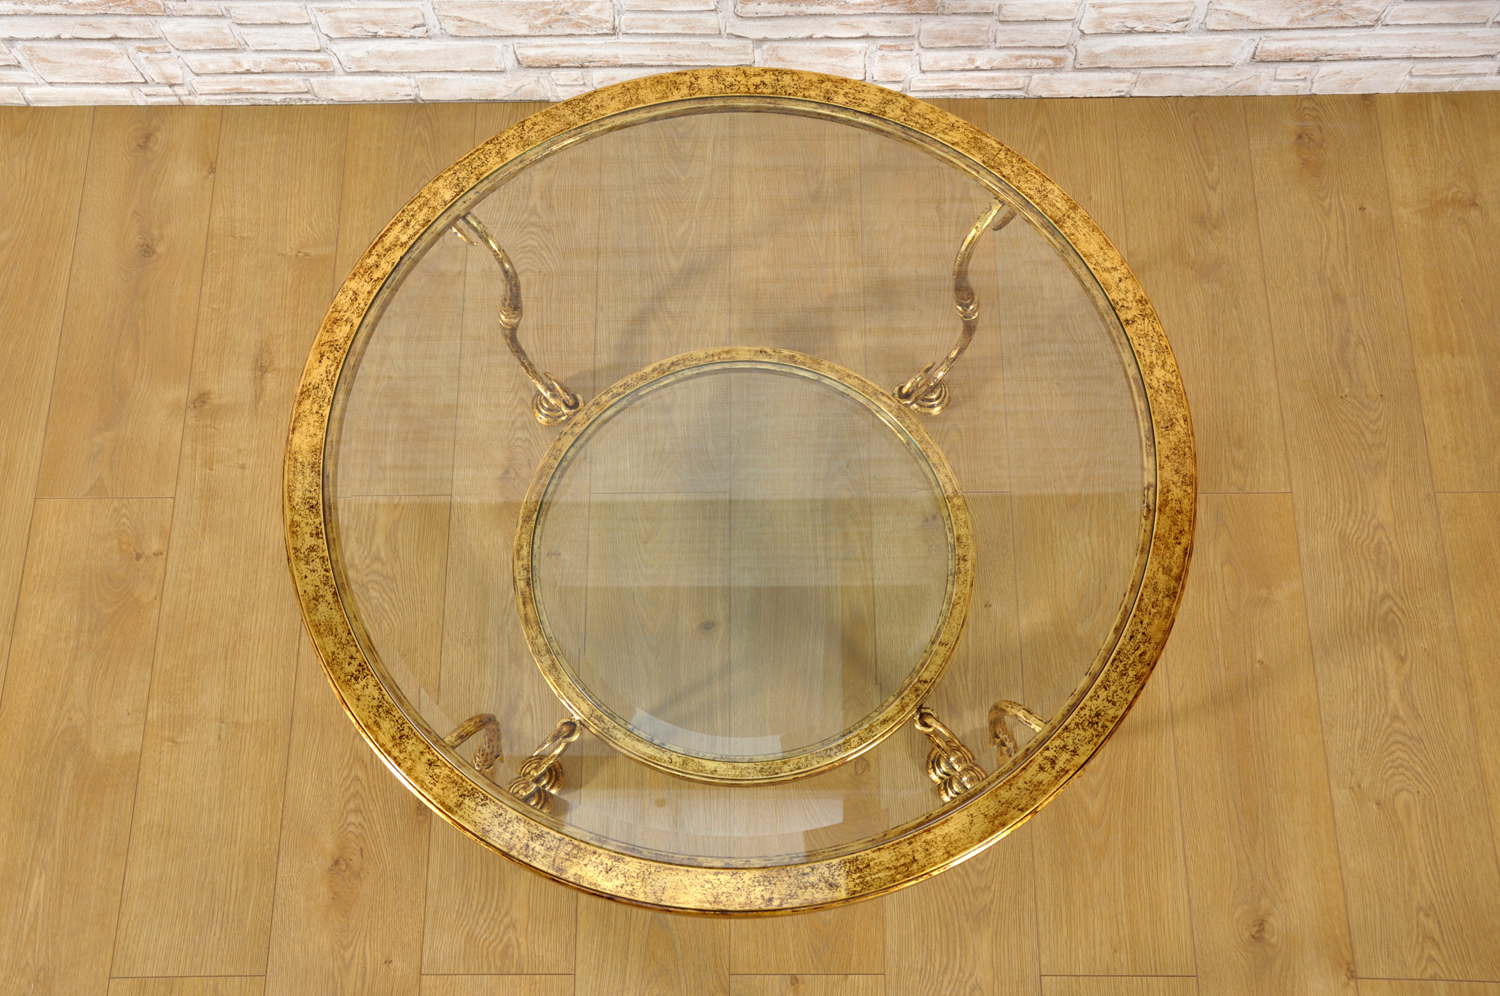 esclusivo tavolino rotondo da salotto in ferro battuto dorato in foglia oro con le 4 gambe sagomate in stile Luigi XIV manufatto di lusso dalla forma circolare